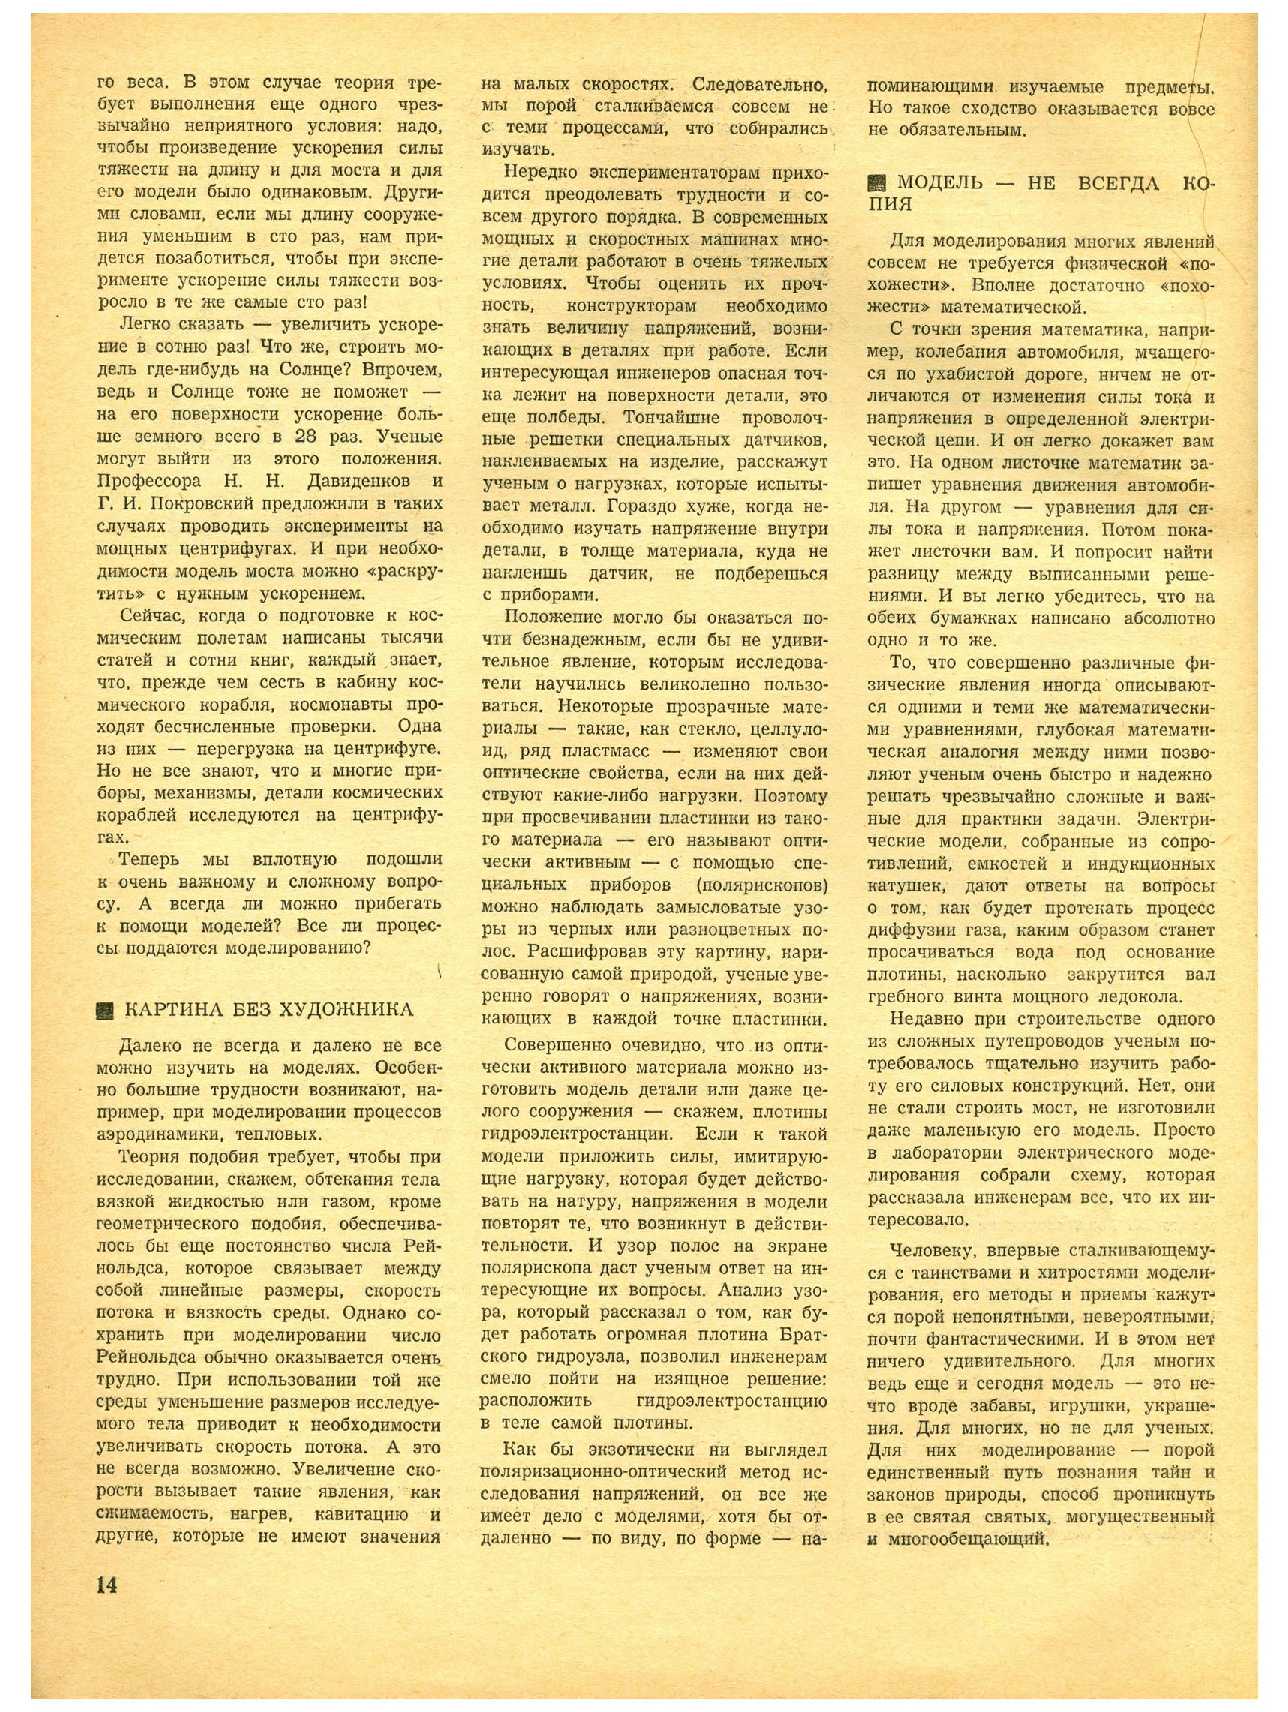 МК 4, 1966, 14 c.